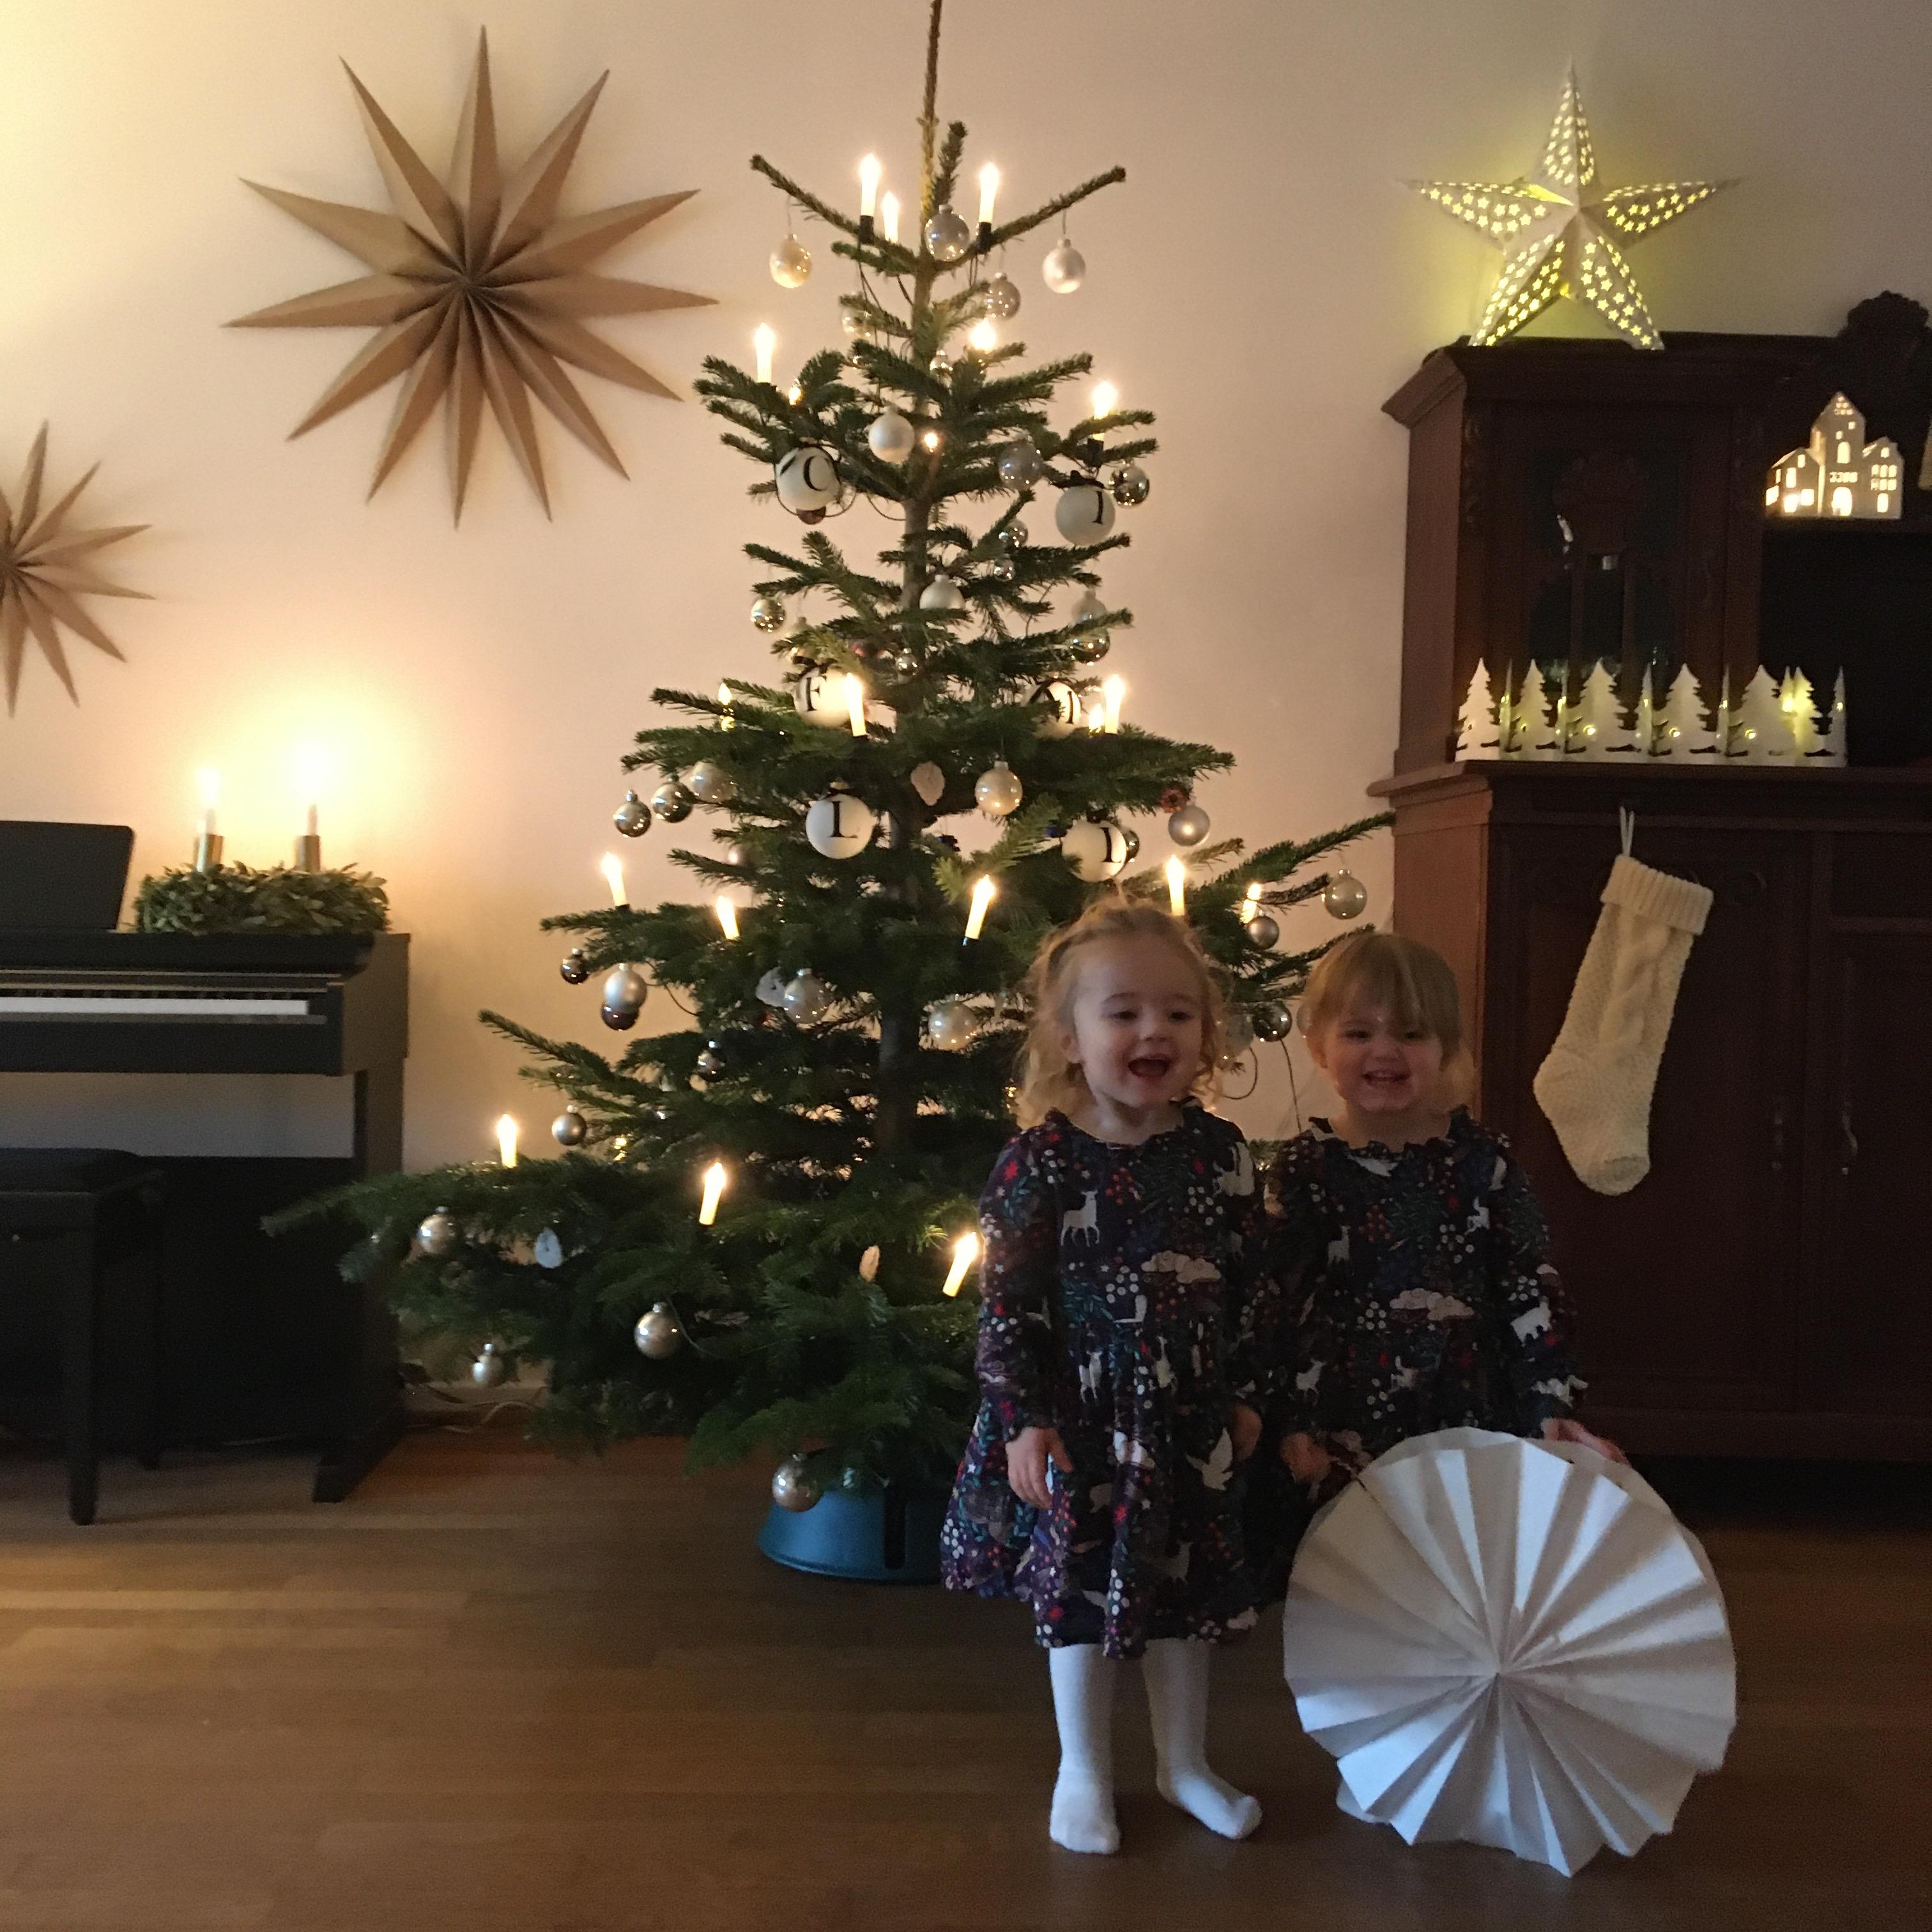 #weihnachten #fröhlicheweihnachten #weihnachtsbaum #zwillinge #hyggehome #wohnzimmer #weihnachtlich